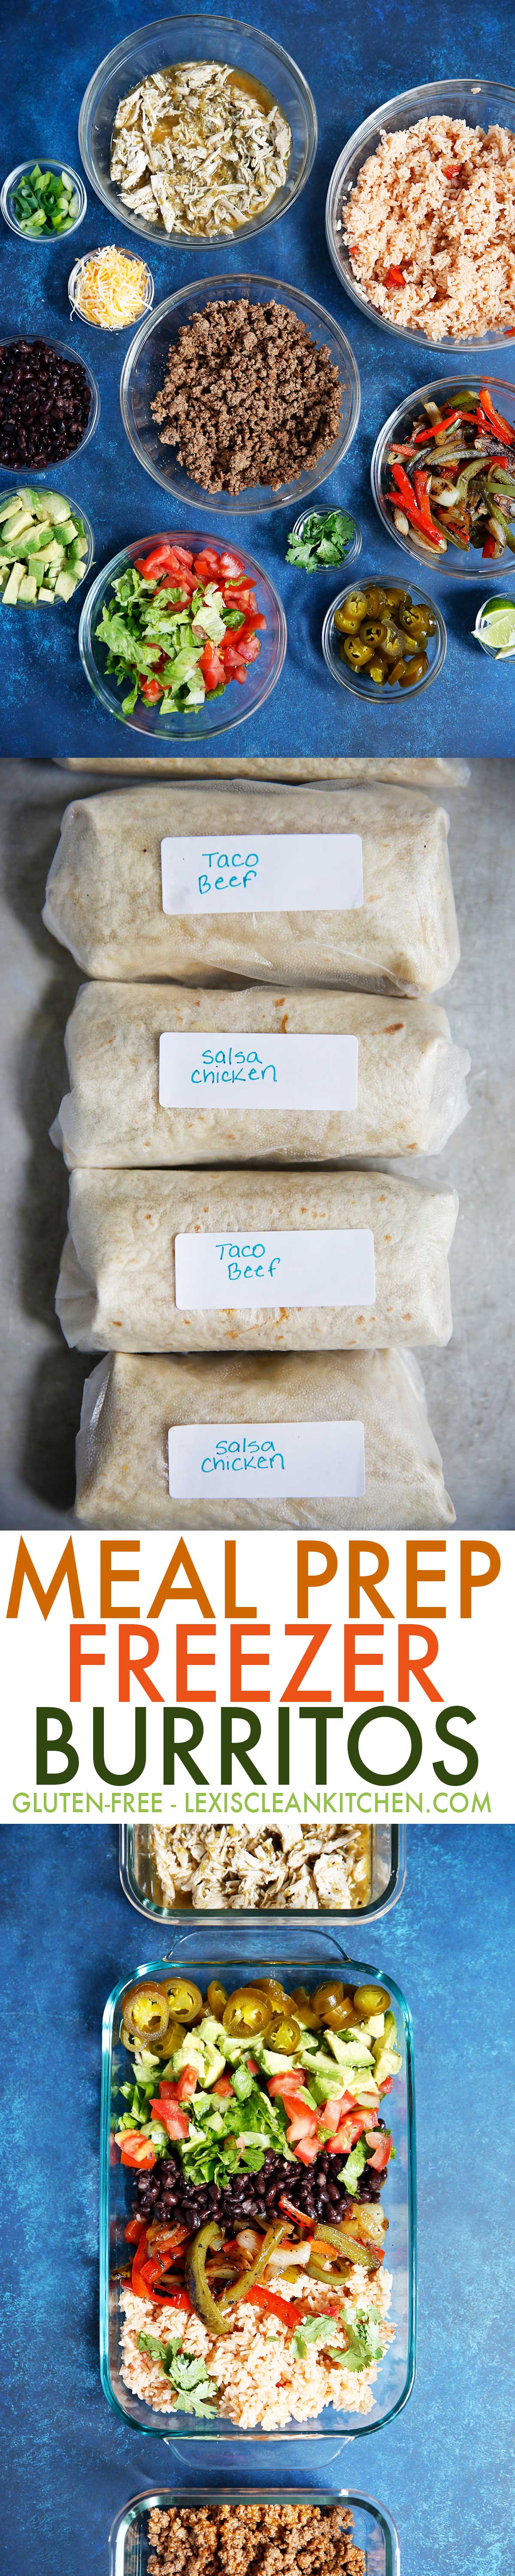 Meal Prep Freezer Burritos | Lexi's Clean Kitchen